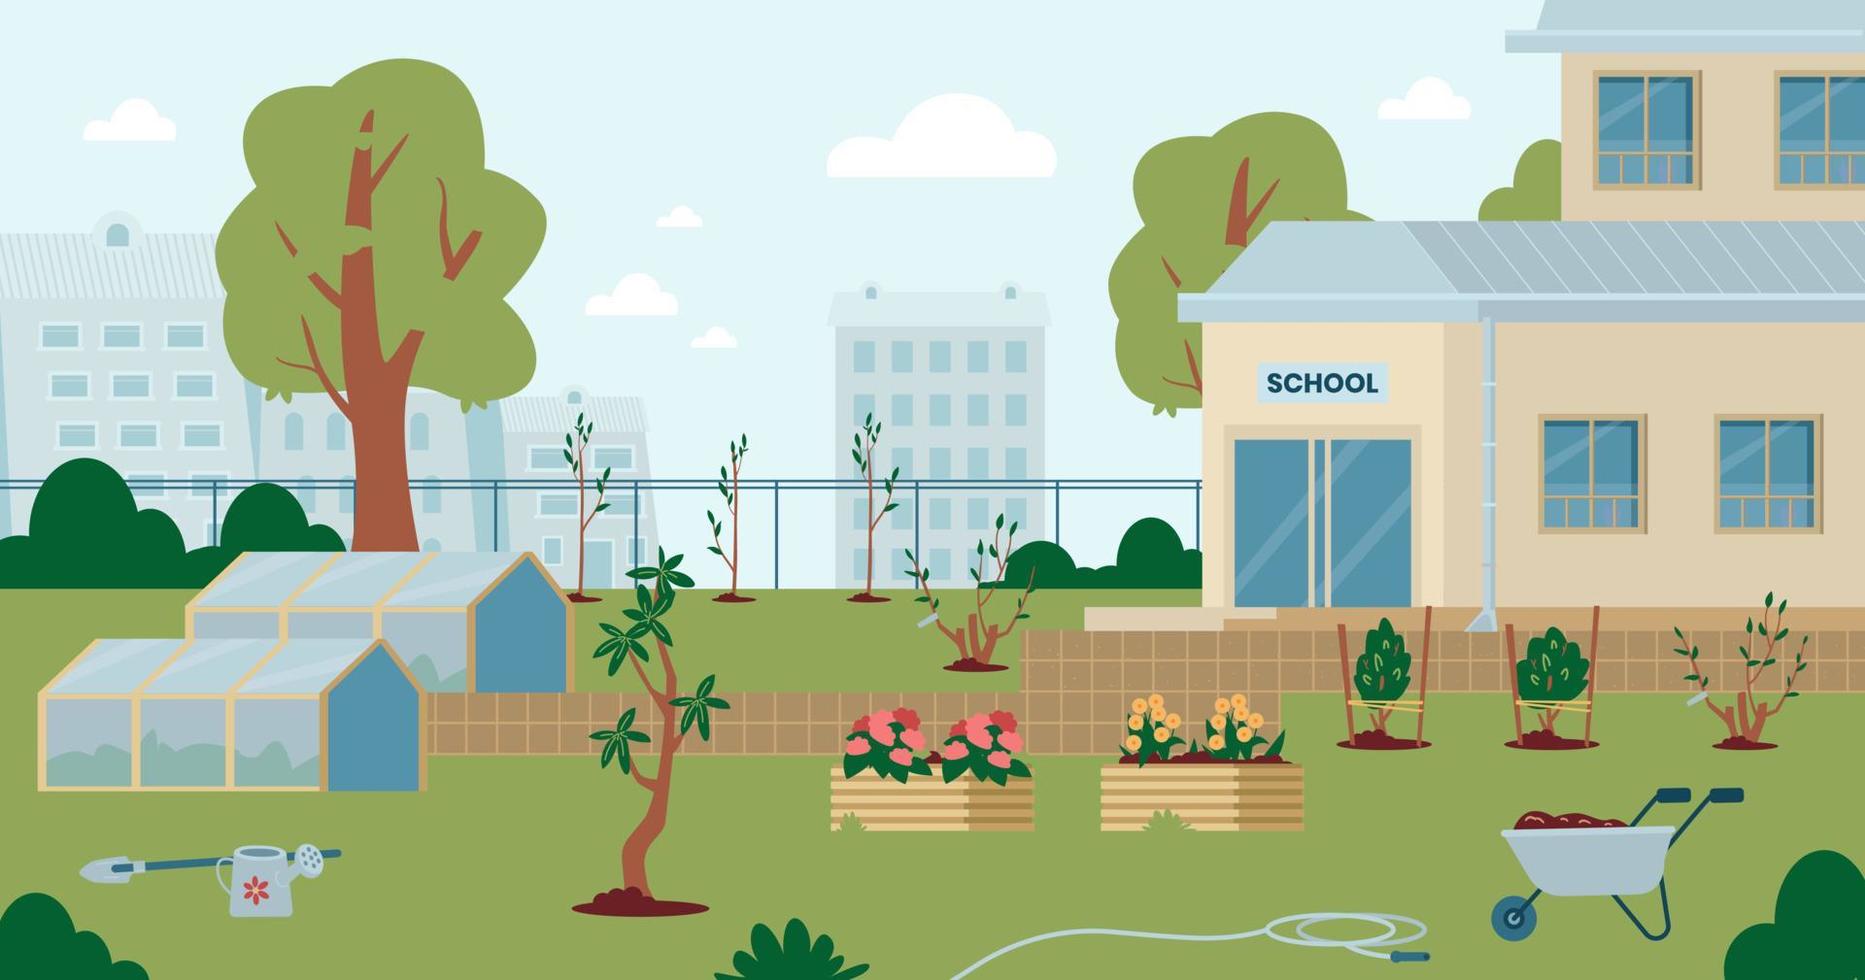 skolbakgård med växthus, rabatter, planterade plantor, trädgårdsutrustning. tom skolvårträdgård med träd och blommor. vektor